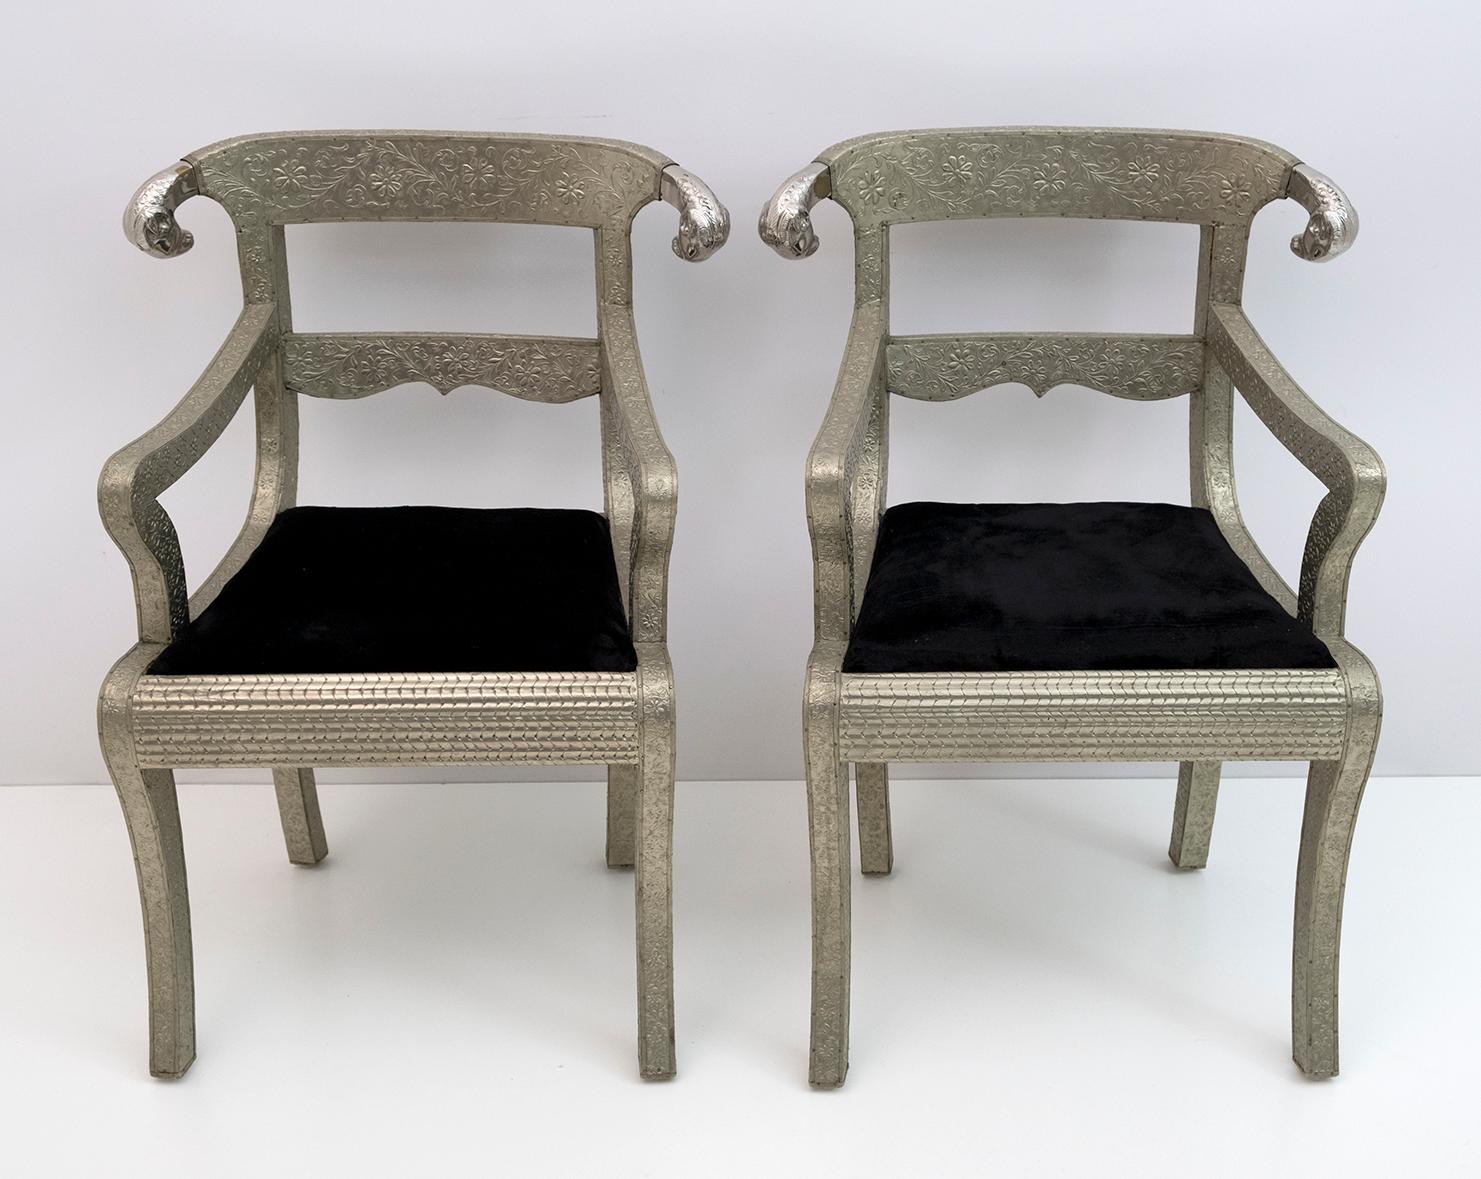 Ensemble de deux chaises d'appoint rembourrées en argent anglo-indien.
Chaise de palais de mariage Anglo Raj, martelée à la main avec un travail de métal argenté en relief sur du bois avec des extrémités sculptées en tête de bélier et un coussin